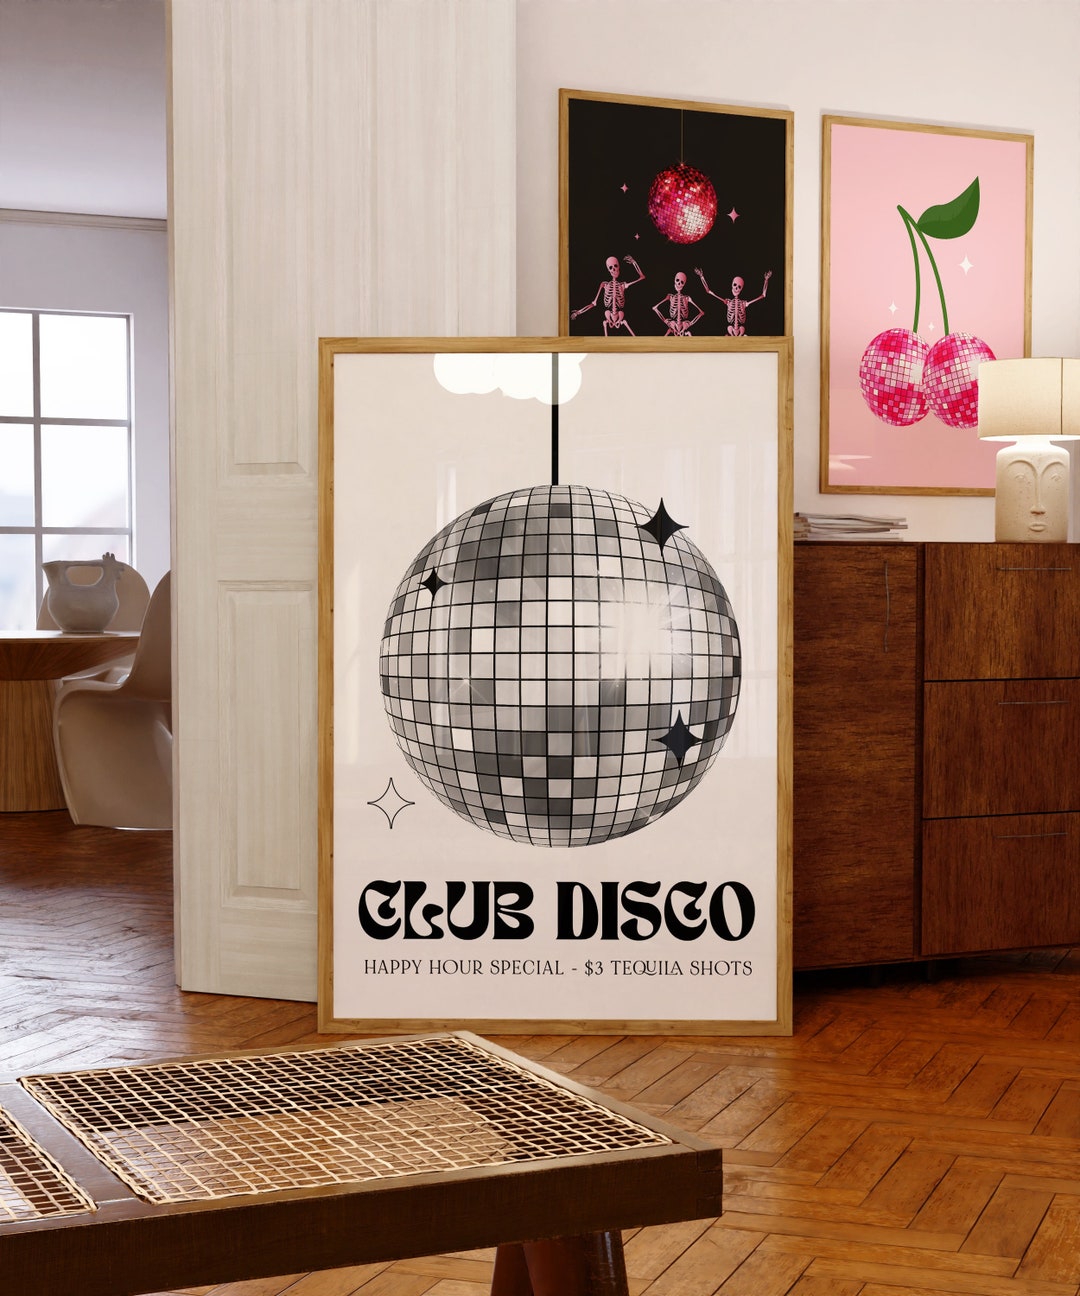 Impression de boule disco art mural des années 70 affiche - Etsy France